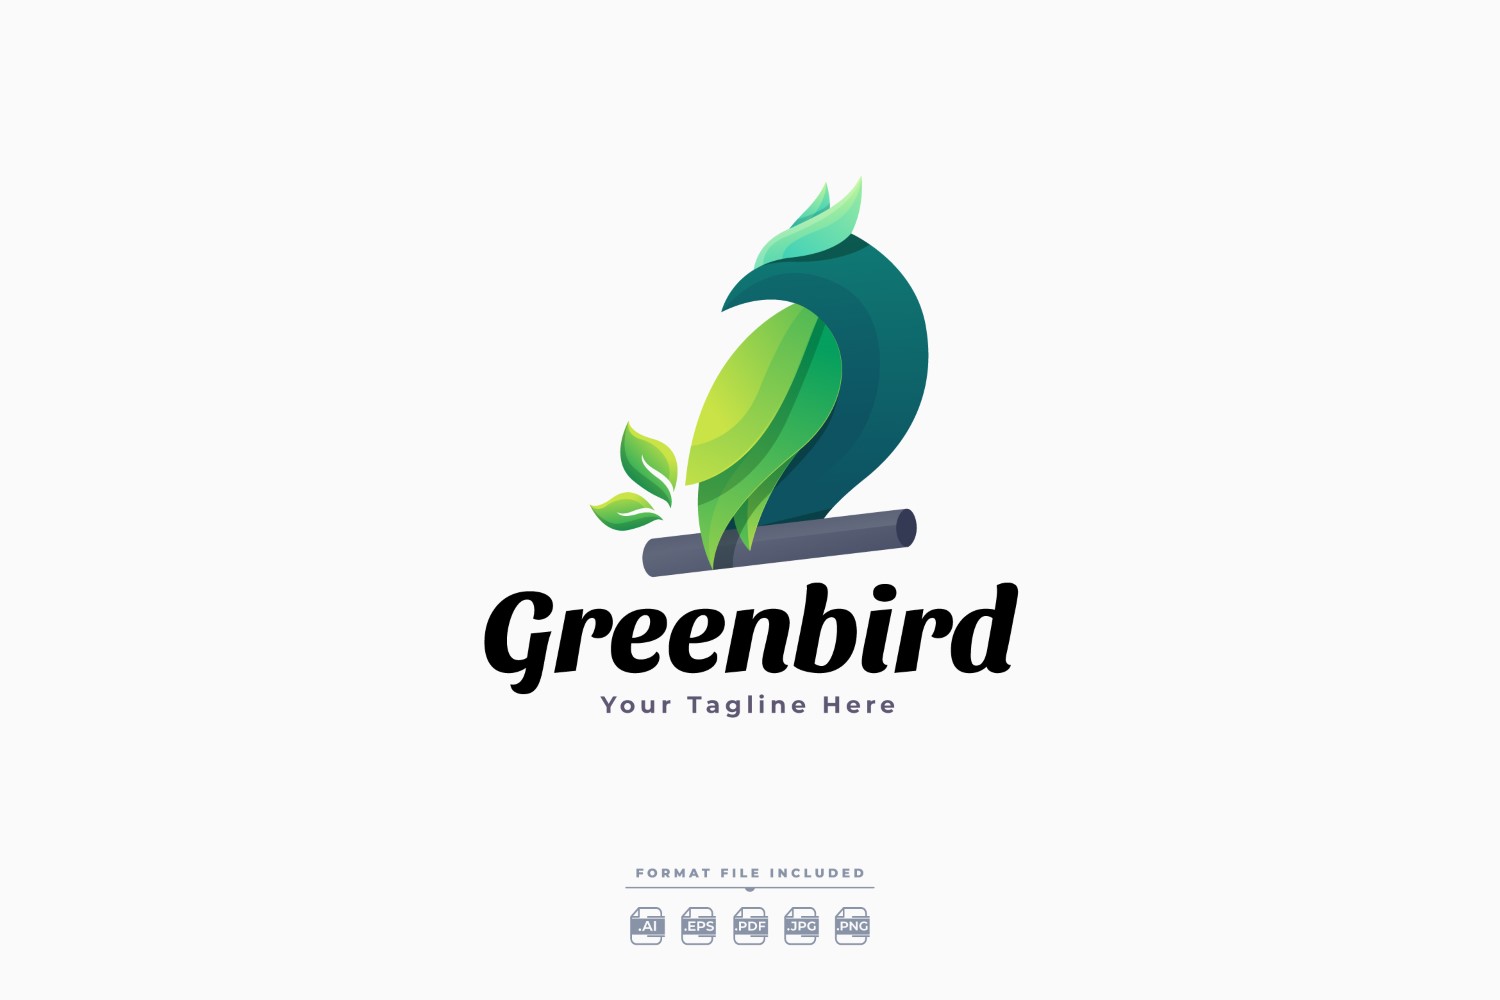 Greenbird Logo Template Design